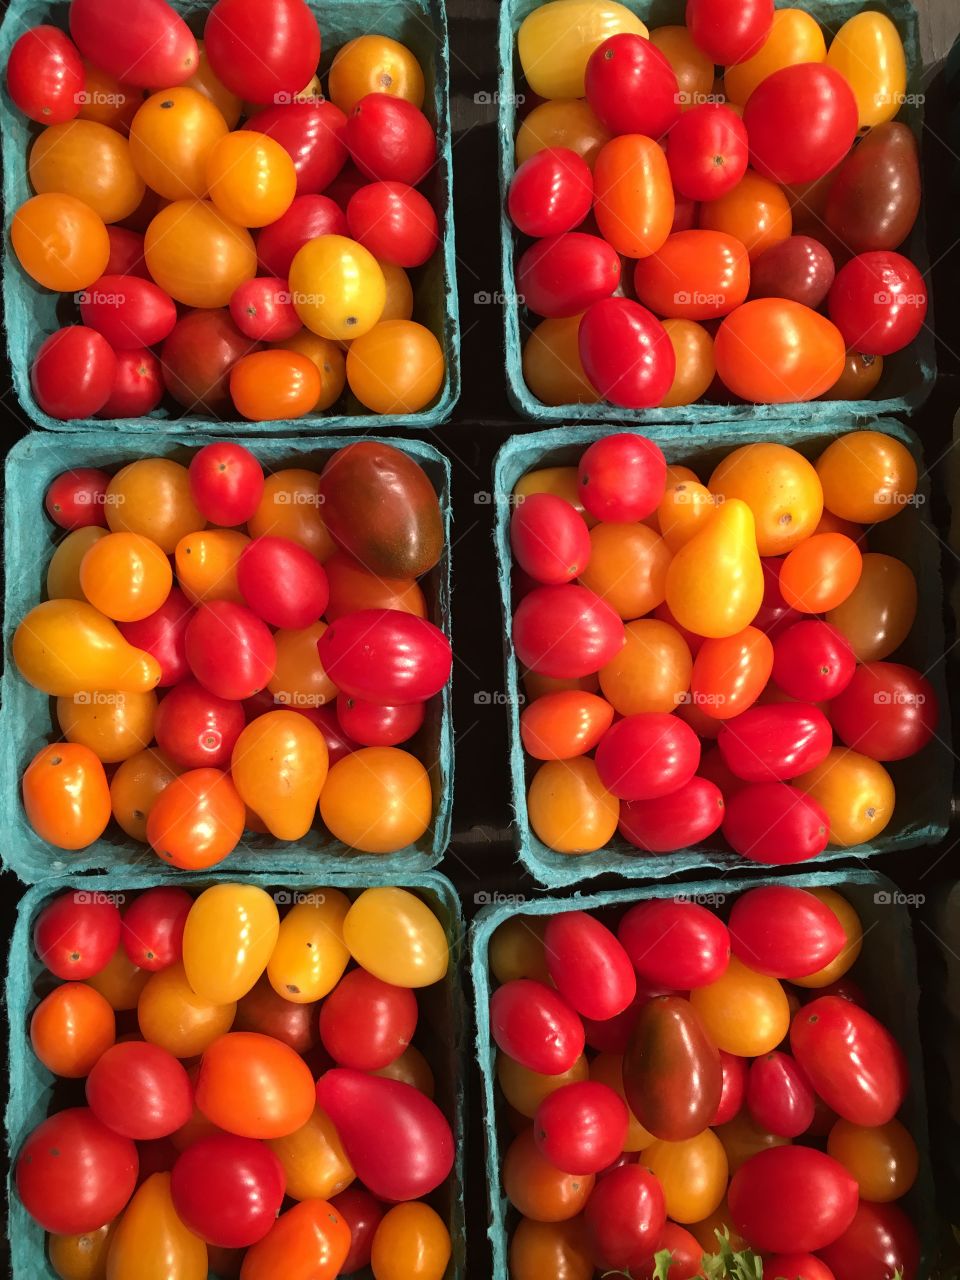 Tomato sale in market